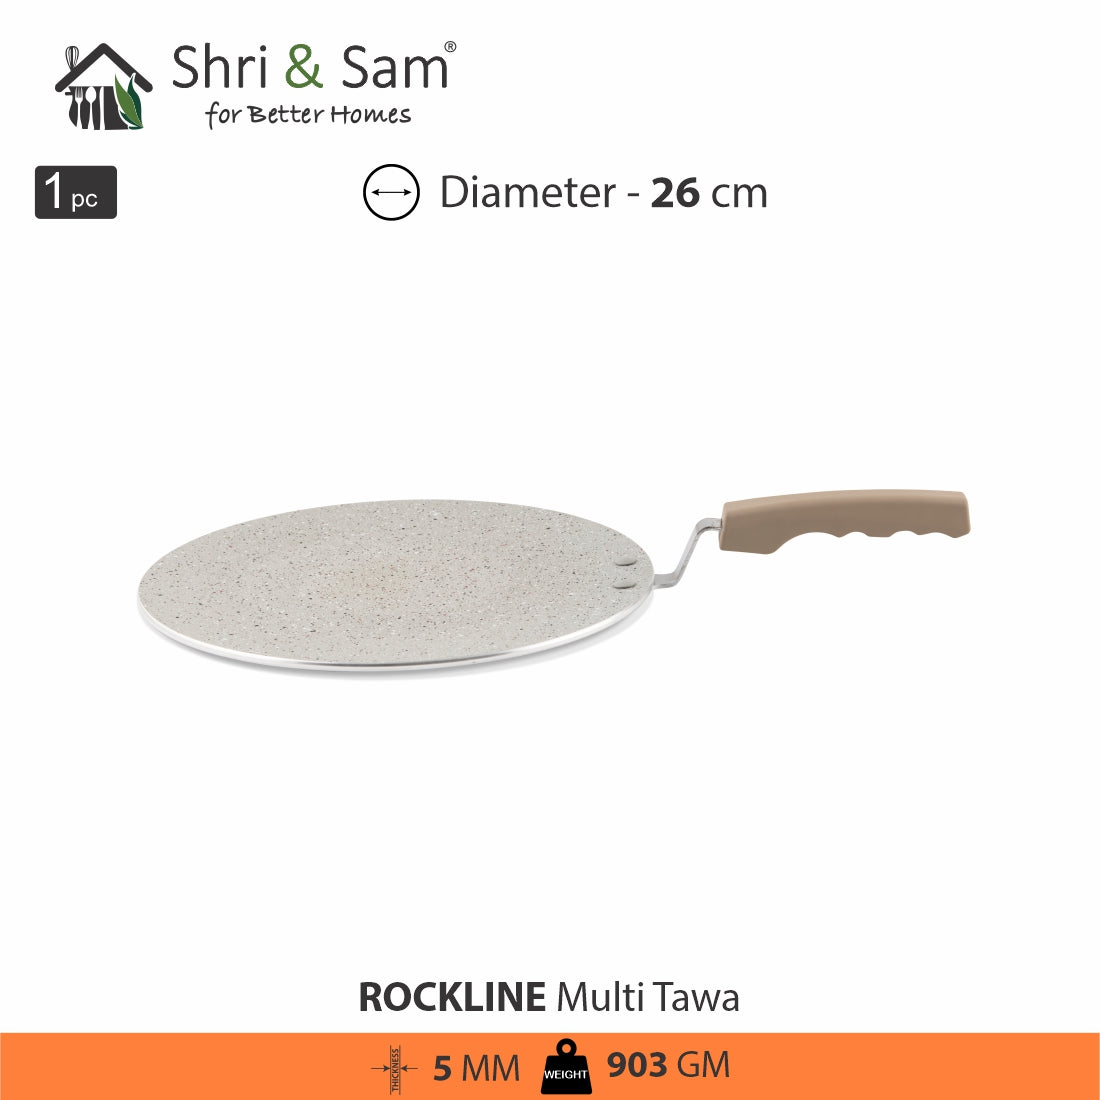 Aluminium Non-Stick Multi Tawa Rockline